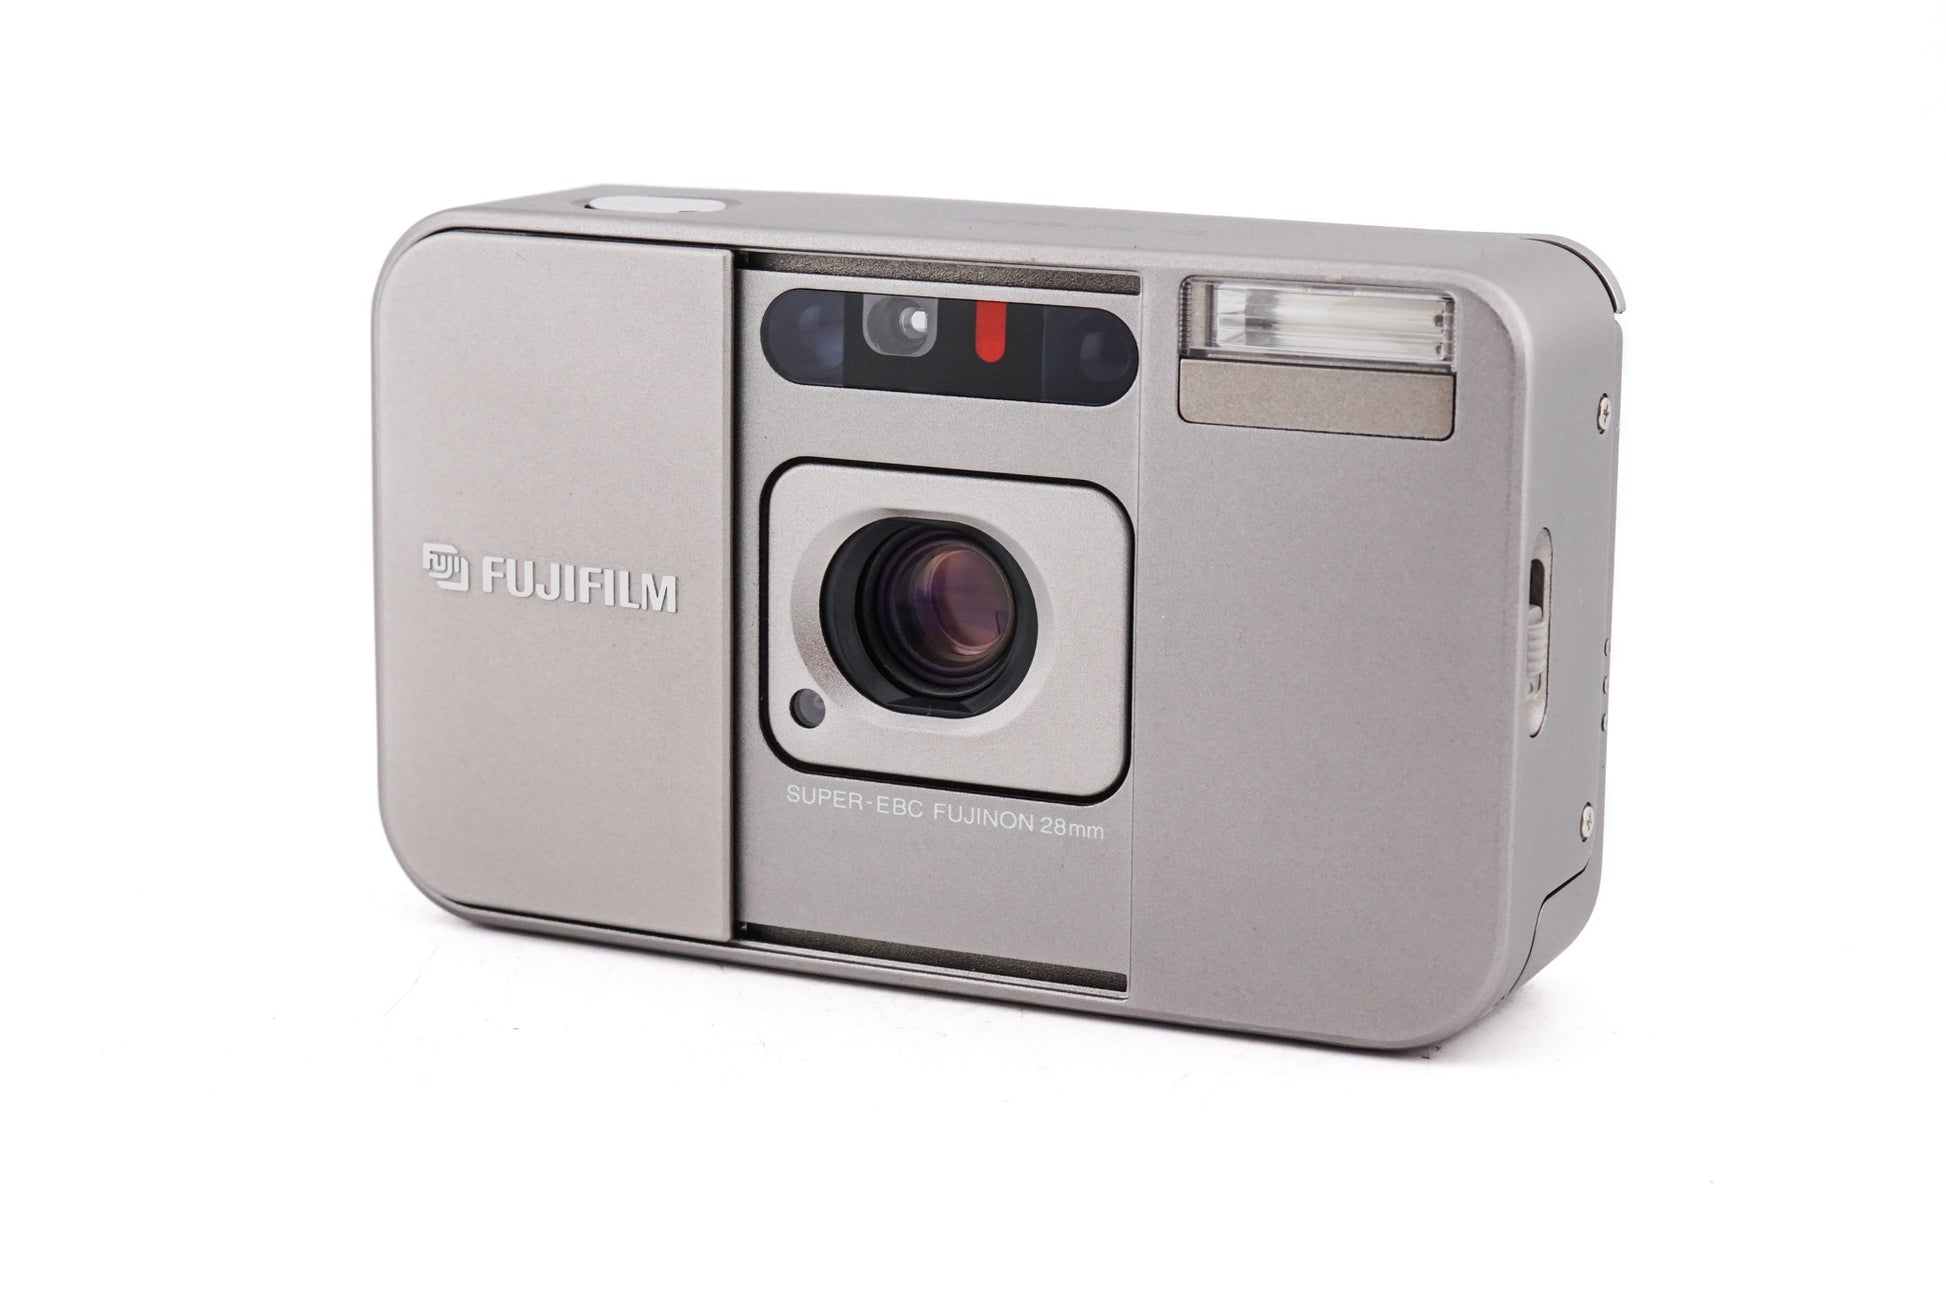 Compact camera mega test: The Fujifilm DL Super Mini (aka Fujifilm